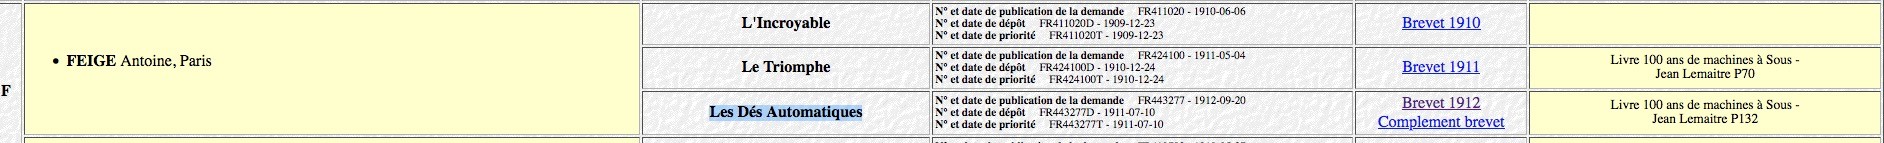 Liste des brevets déposés par Antoine Feige selon lastcenturygames.free.fr